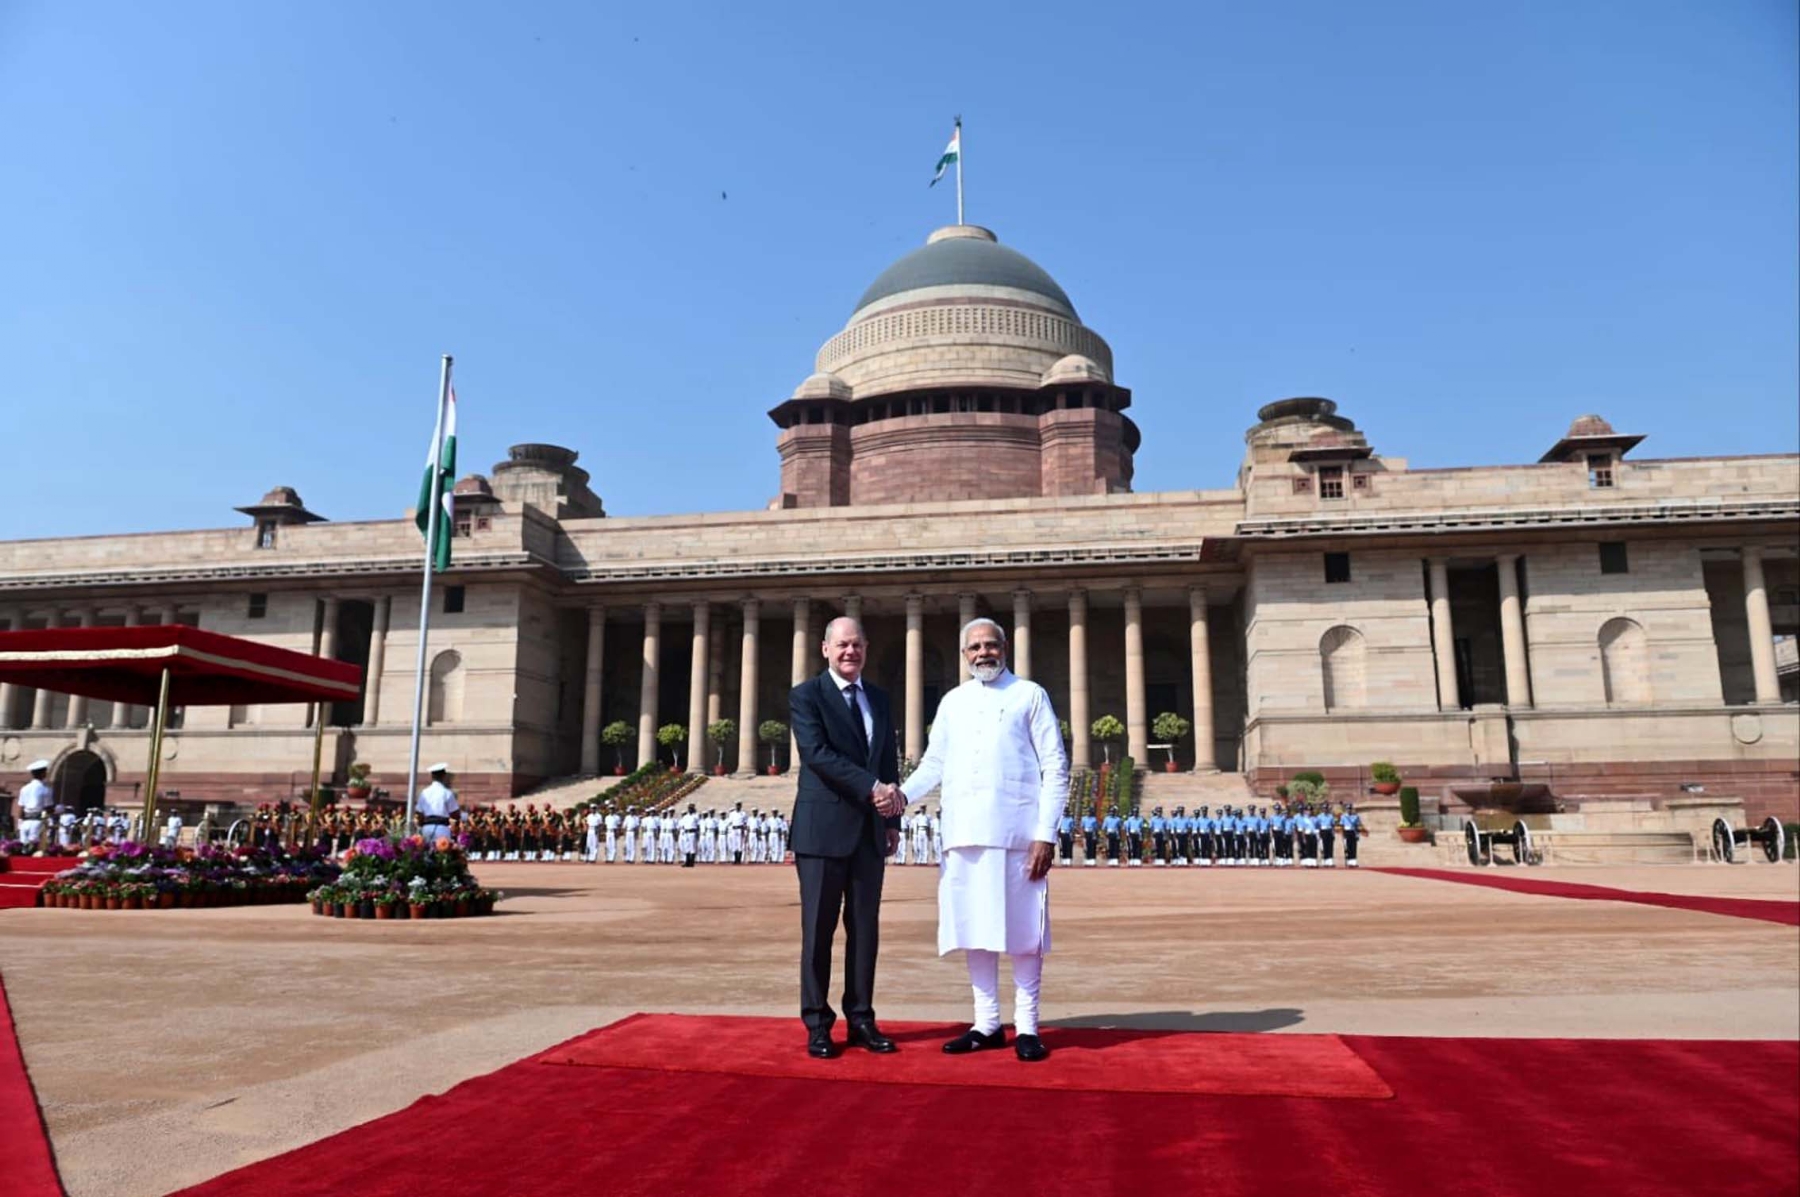 नई दिल्ली में शनिवार 25 फरवरी को राष्ट्रपति भवन में प्रधानमंत्री नरेन्द्र मोदी ने जर्मनी चांसलर ओलाफ शोल्ज का स्वागत किया। हिन्दुस्थान समाचार/ फोटो गणेश बिष्ट 